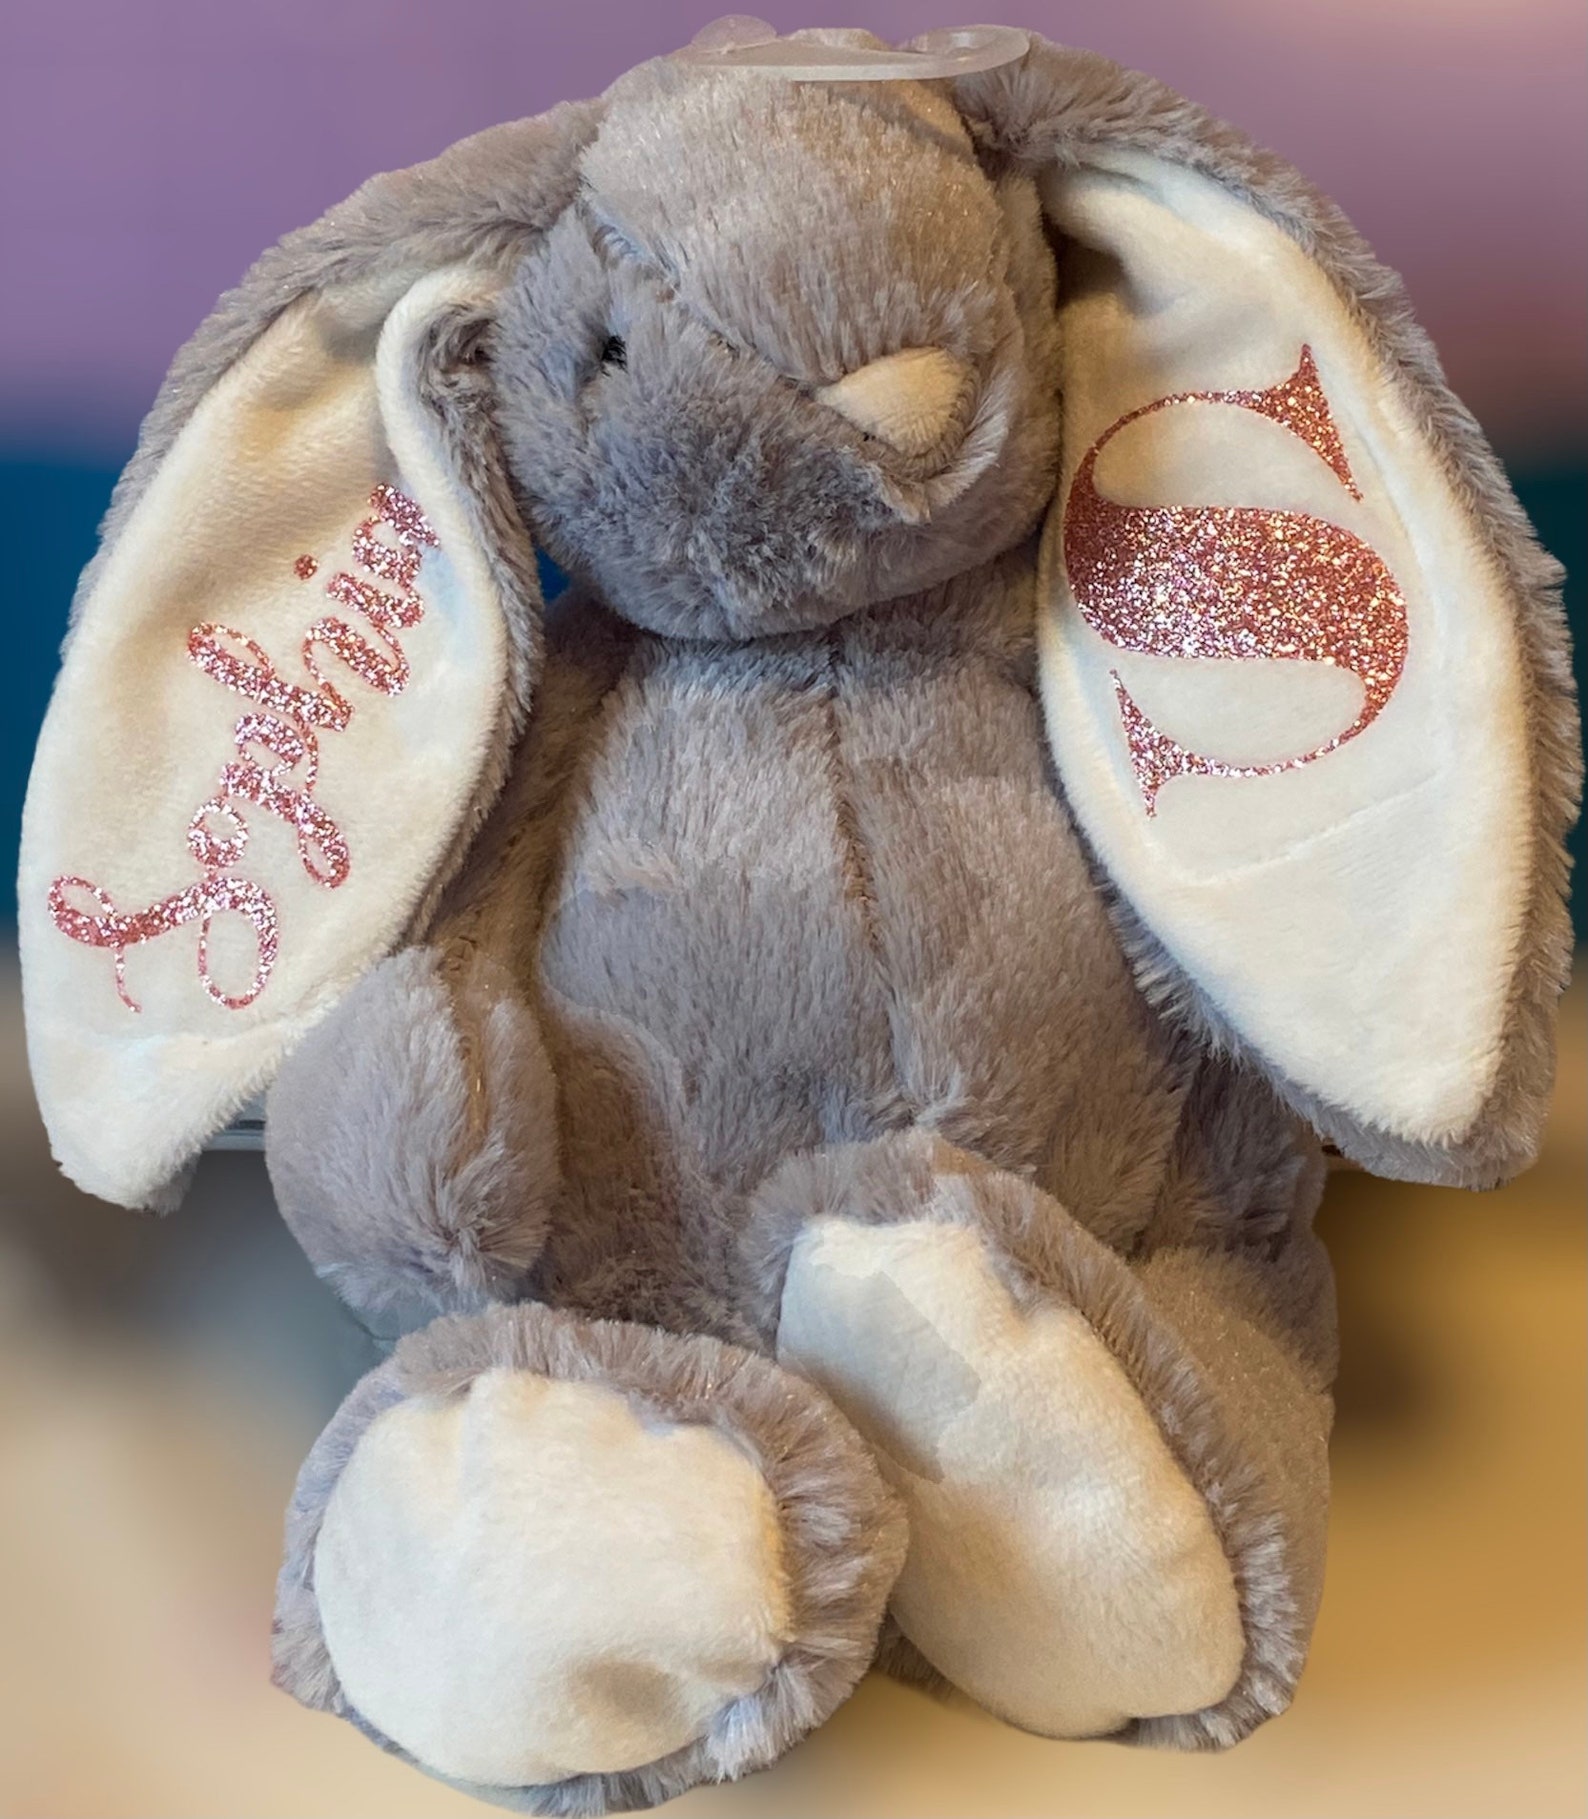 Personalised floppy plush softtoy bunny new baby keepsake gift | Etsy